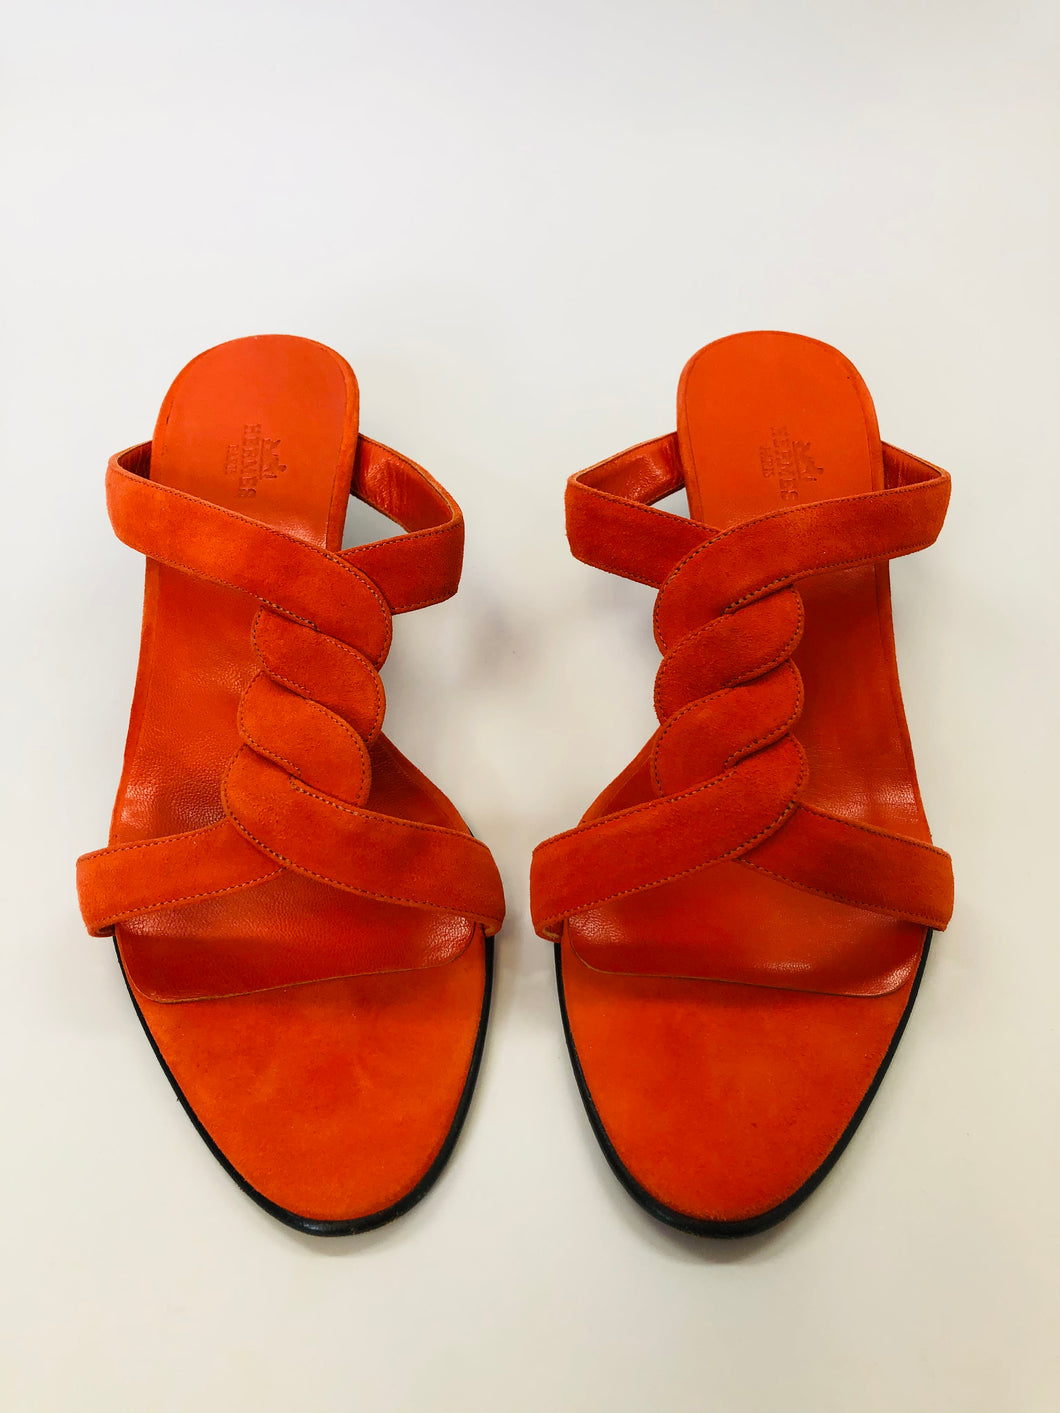 Hermès Orange Suede Sandals Size 40